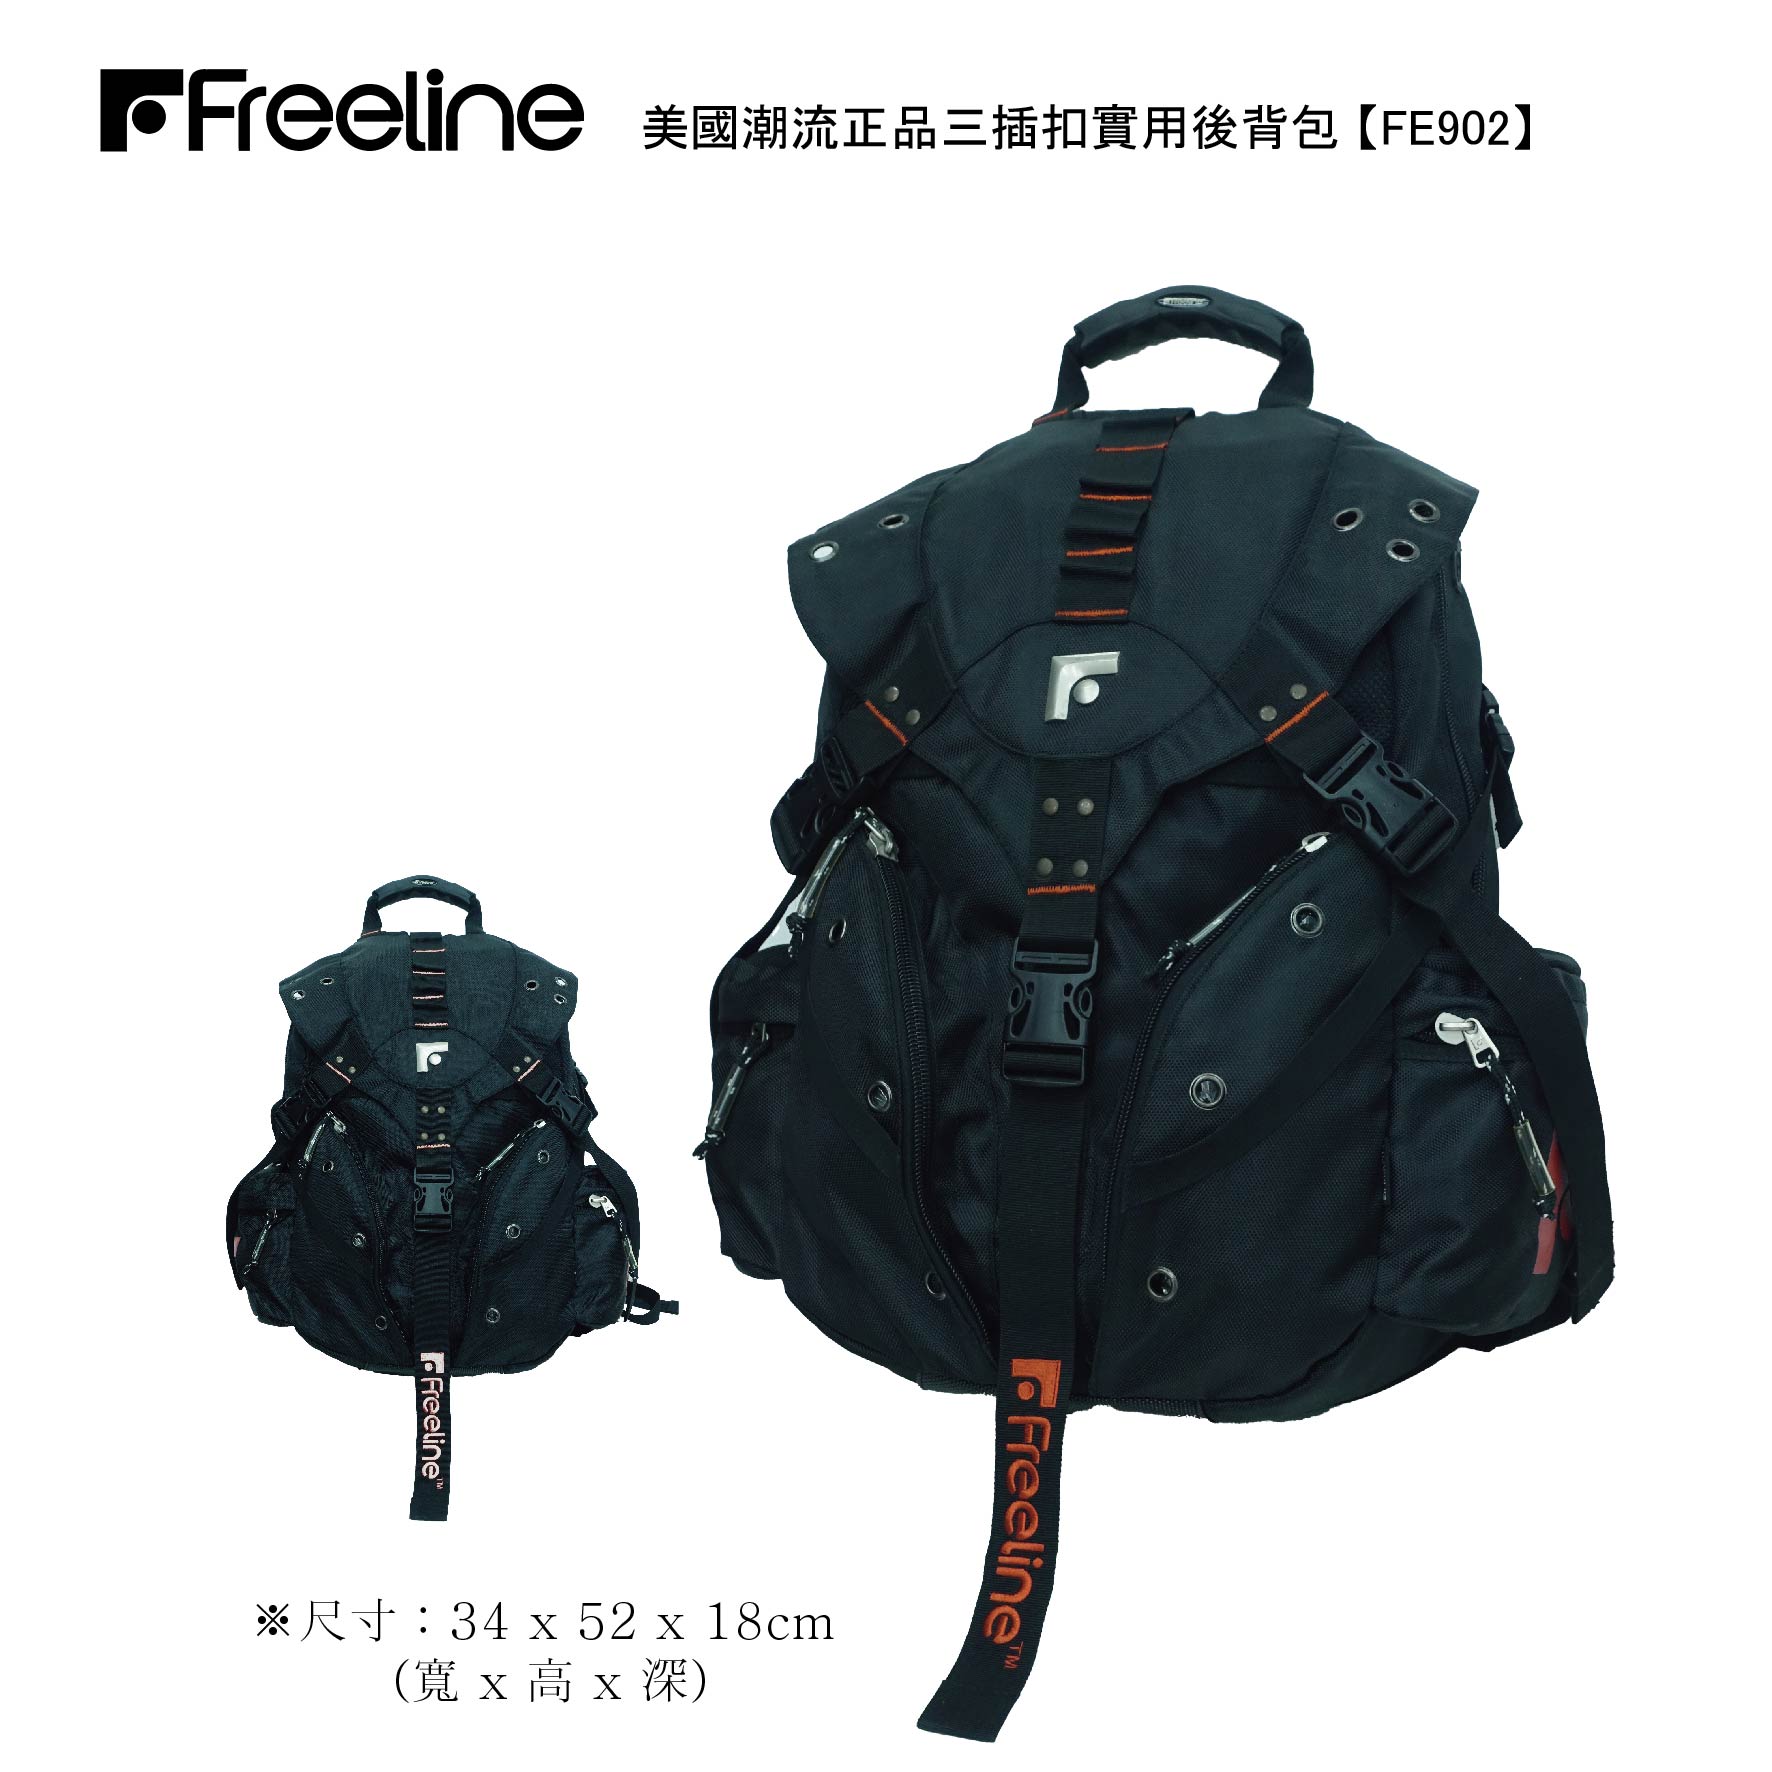 FE902【Freeline】≡ 台灣總經銷 ≡ 美國潮流正品 ≡ 3插扣實用後背包 (二色)